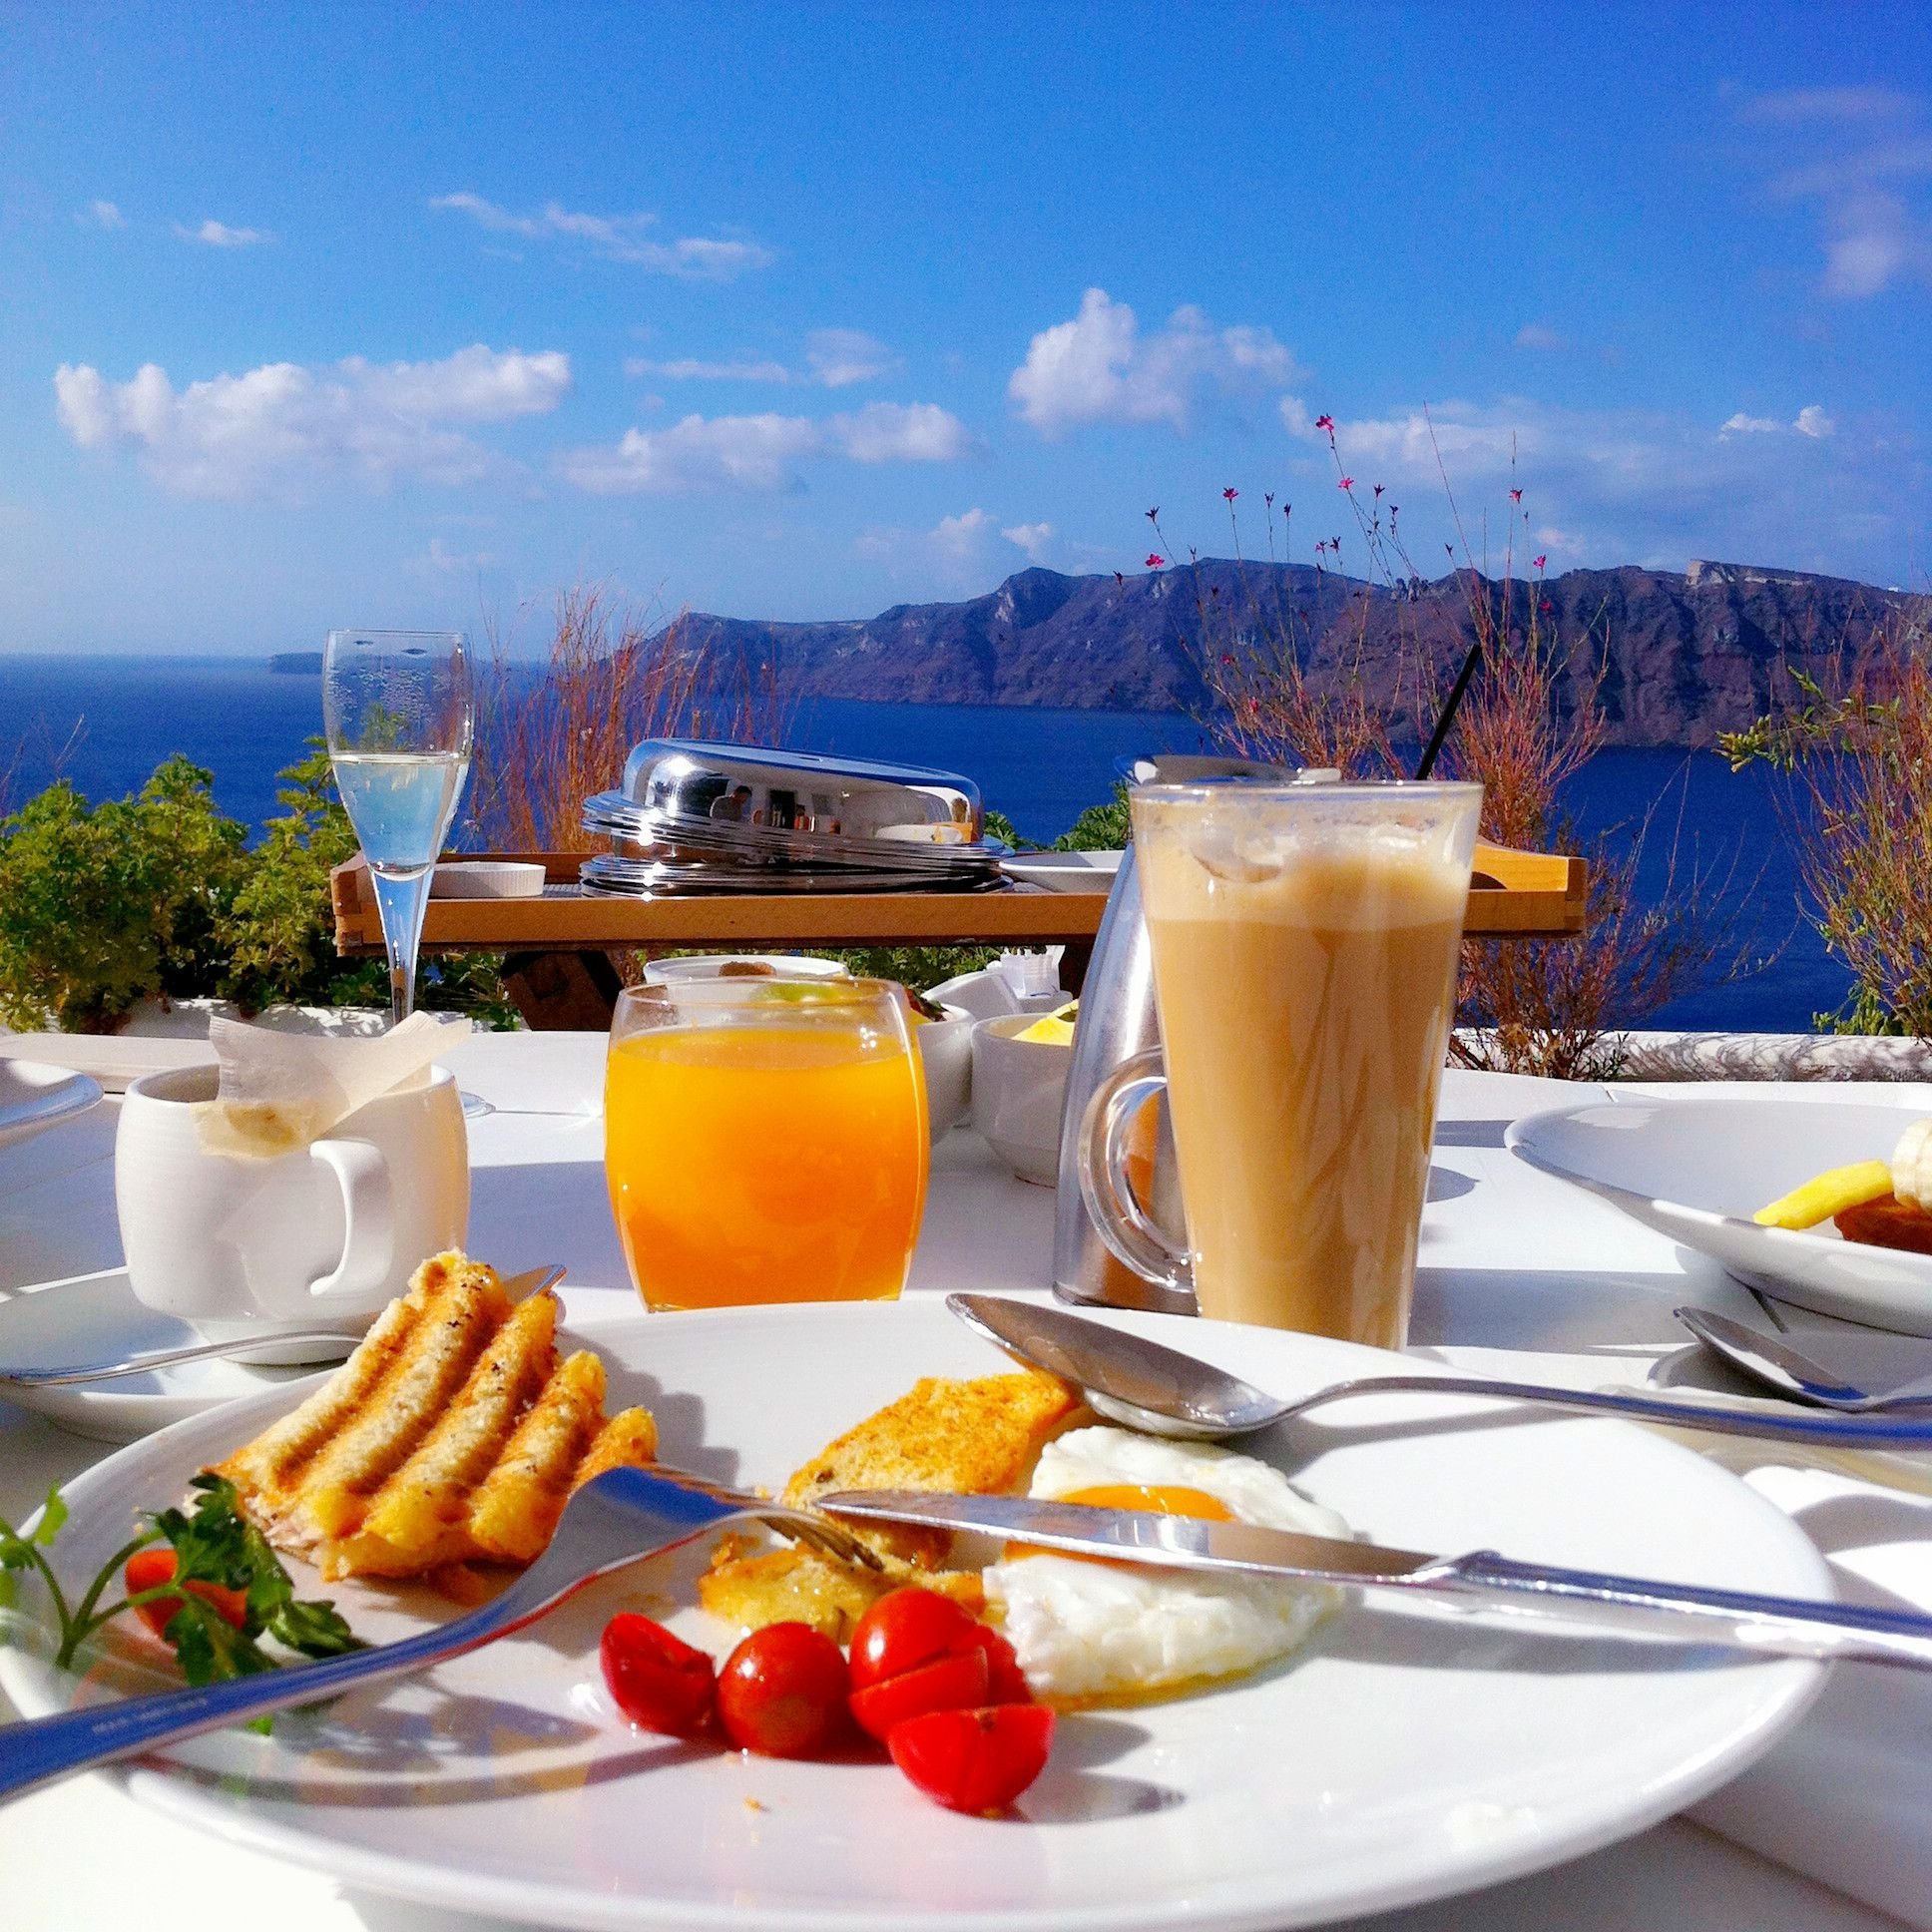 Обеденный отдых. Красивый завтрак. Завтрак в отеле. Завтрак в тропиках. Завтраки в отелях.